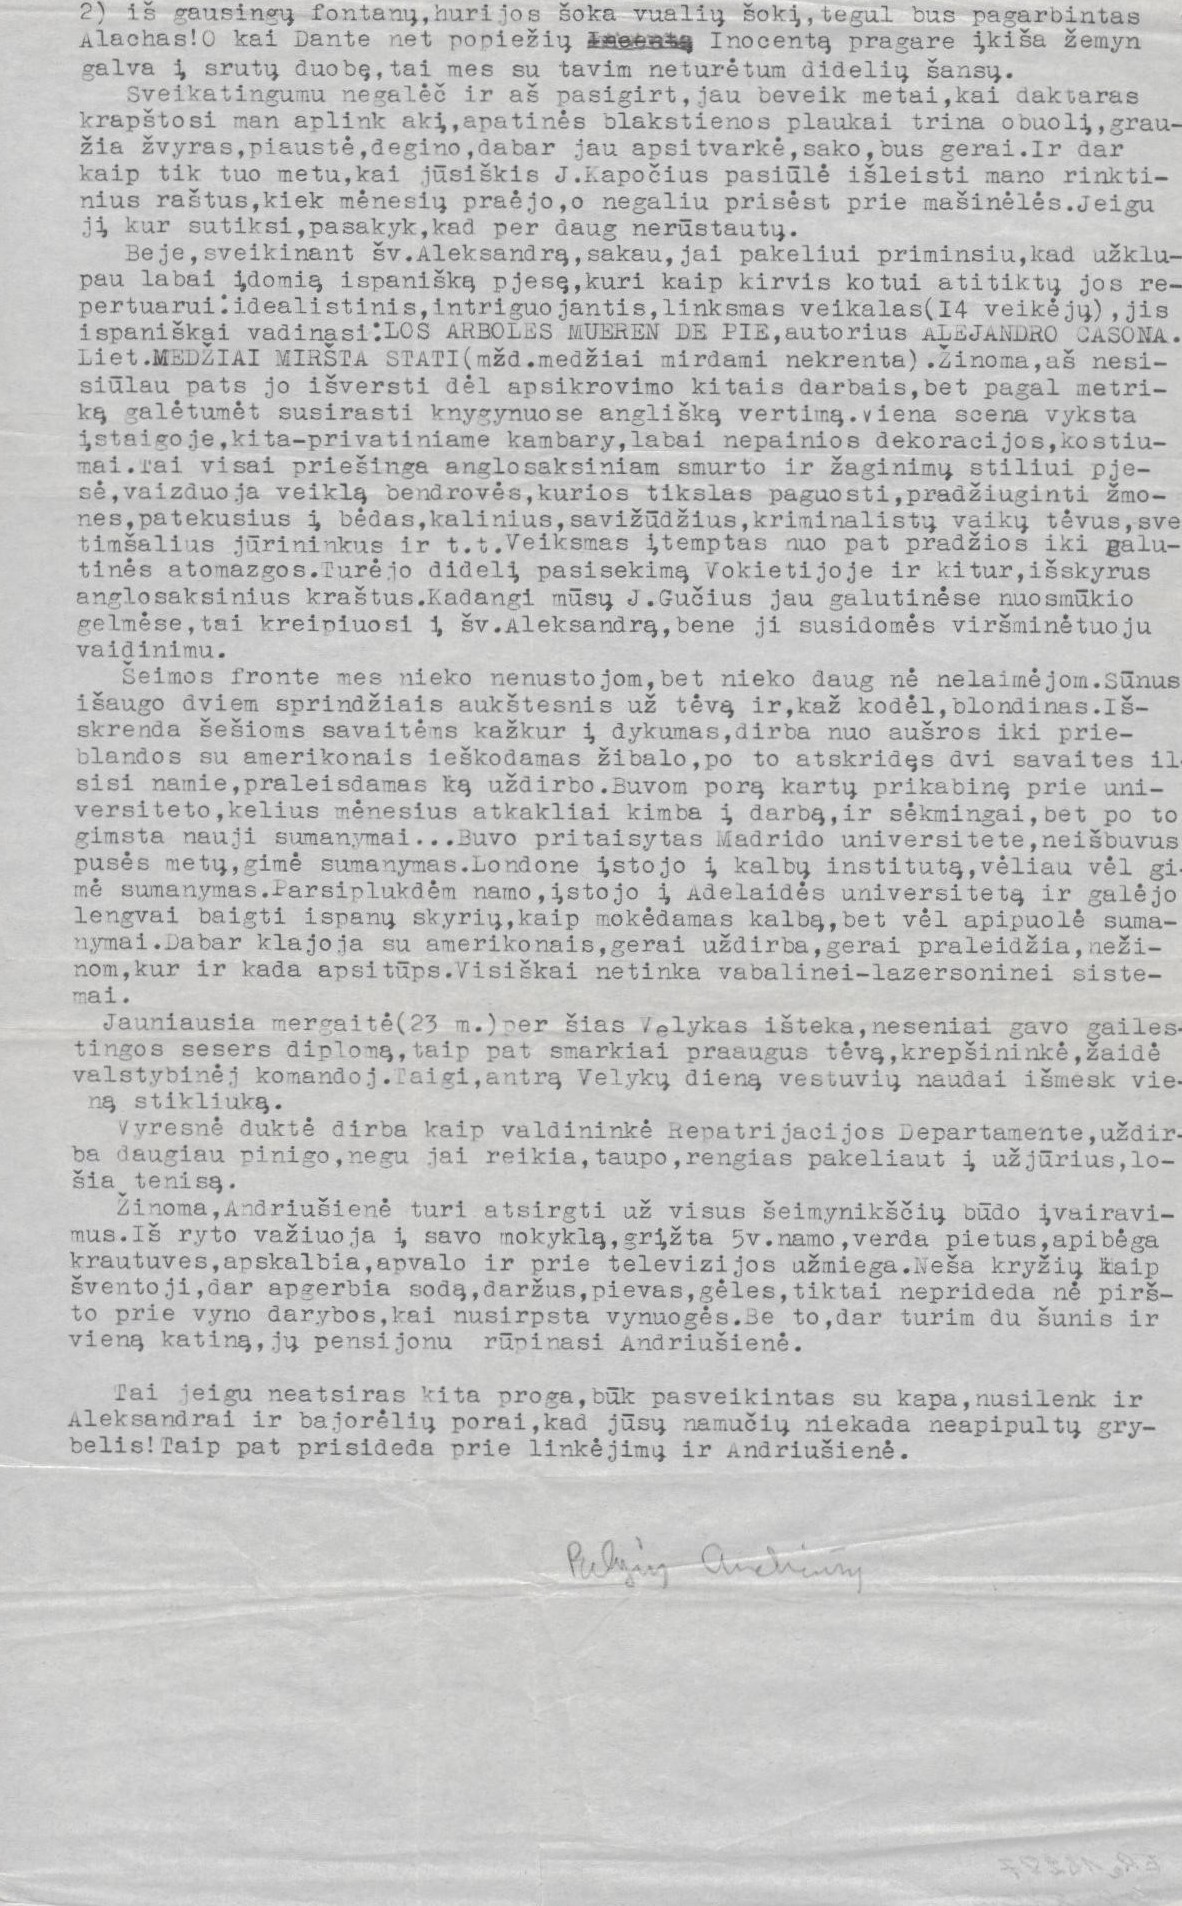 P. Andriušio laiškas A. Gustaičiui. Adelaidė, 1967 m. vasario 19 d. 2 psl. MLLM 87061